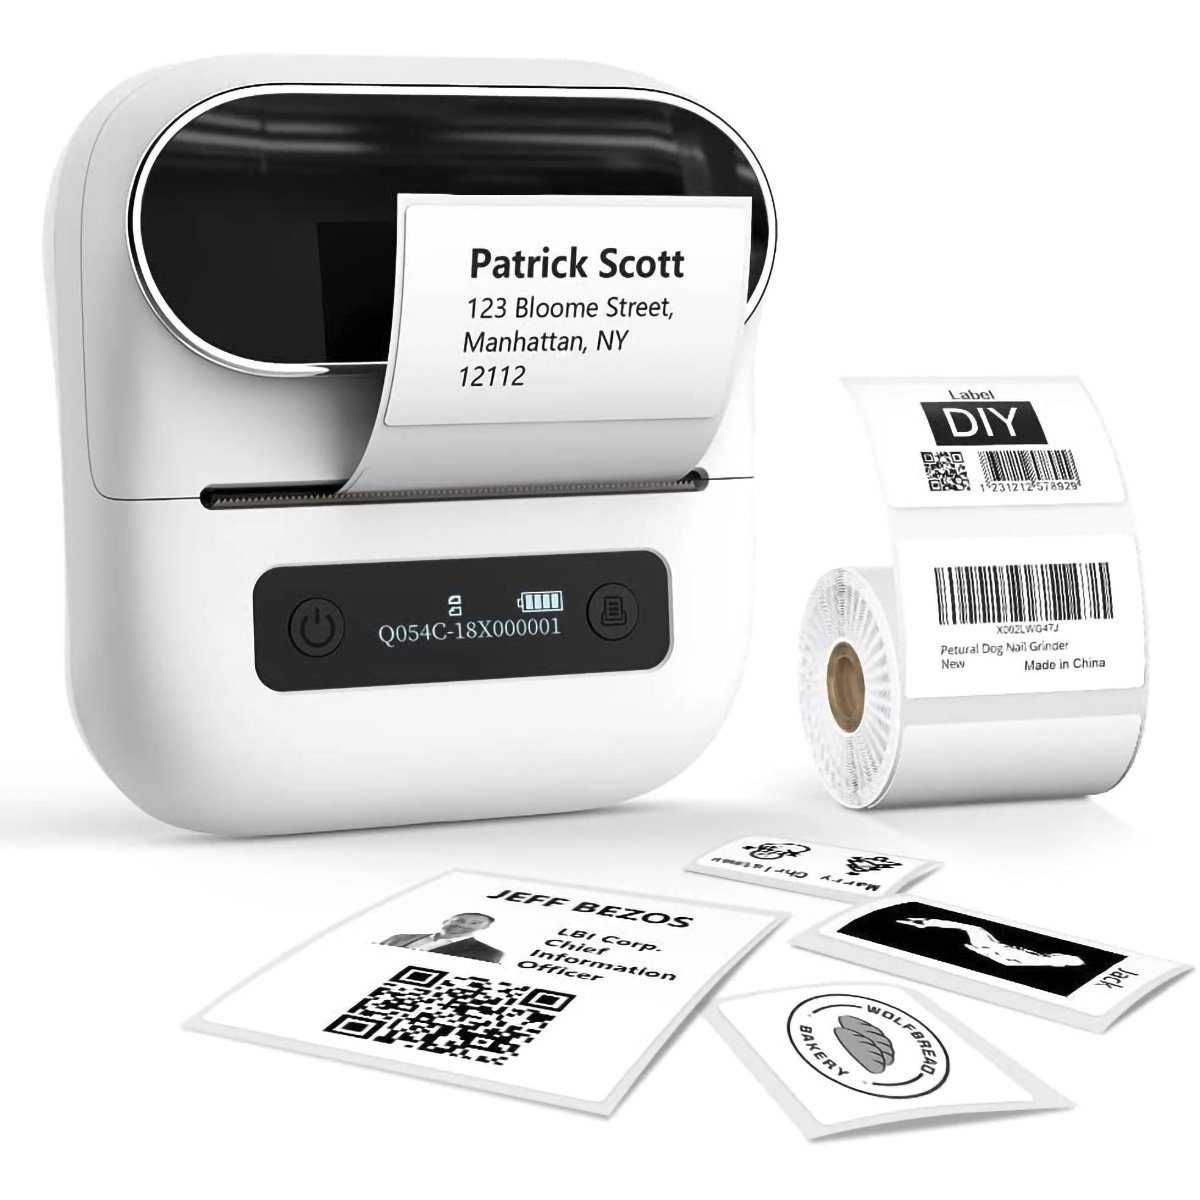 yozhiqu Selbstklebender Thermotransfer-Etikettendrucker,40-mm-Etikettendrucker Etikettendrucker, (tragbarer - Kompakt und vielseitig, unterstützt Android und iOS)